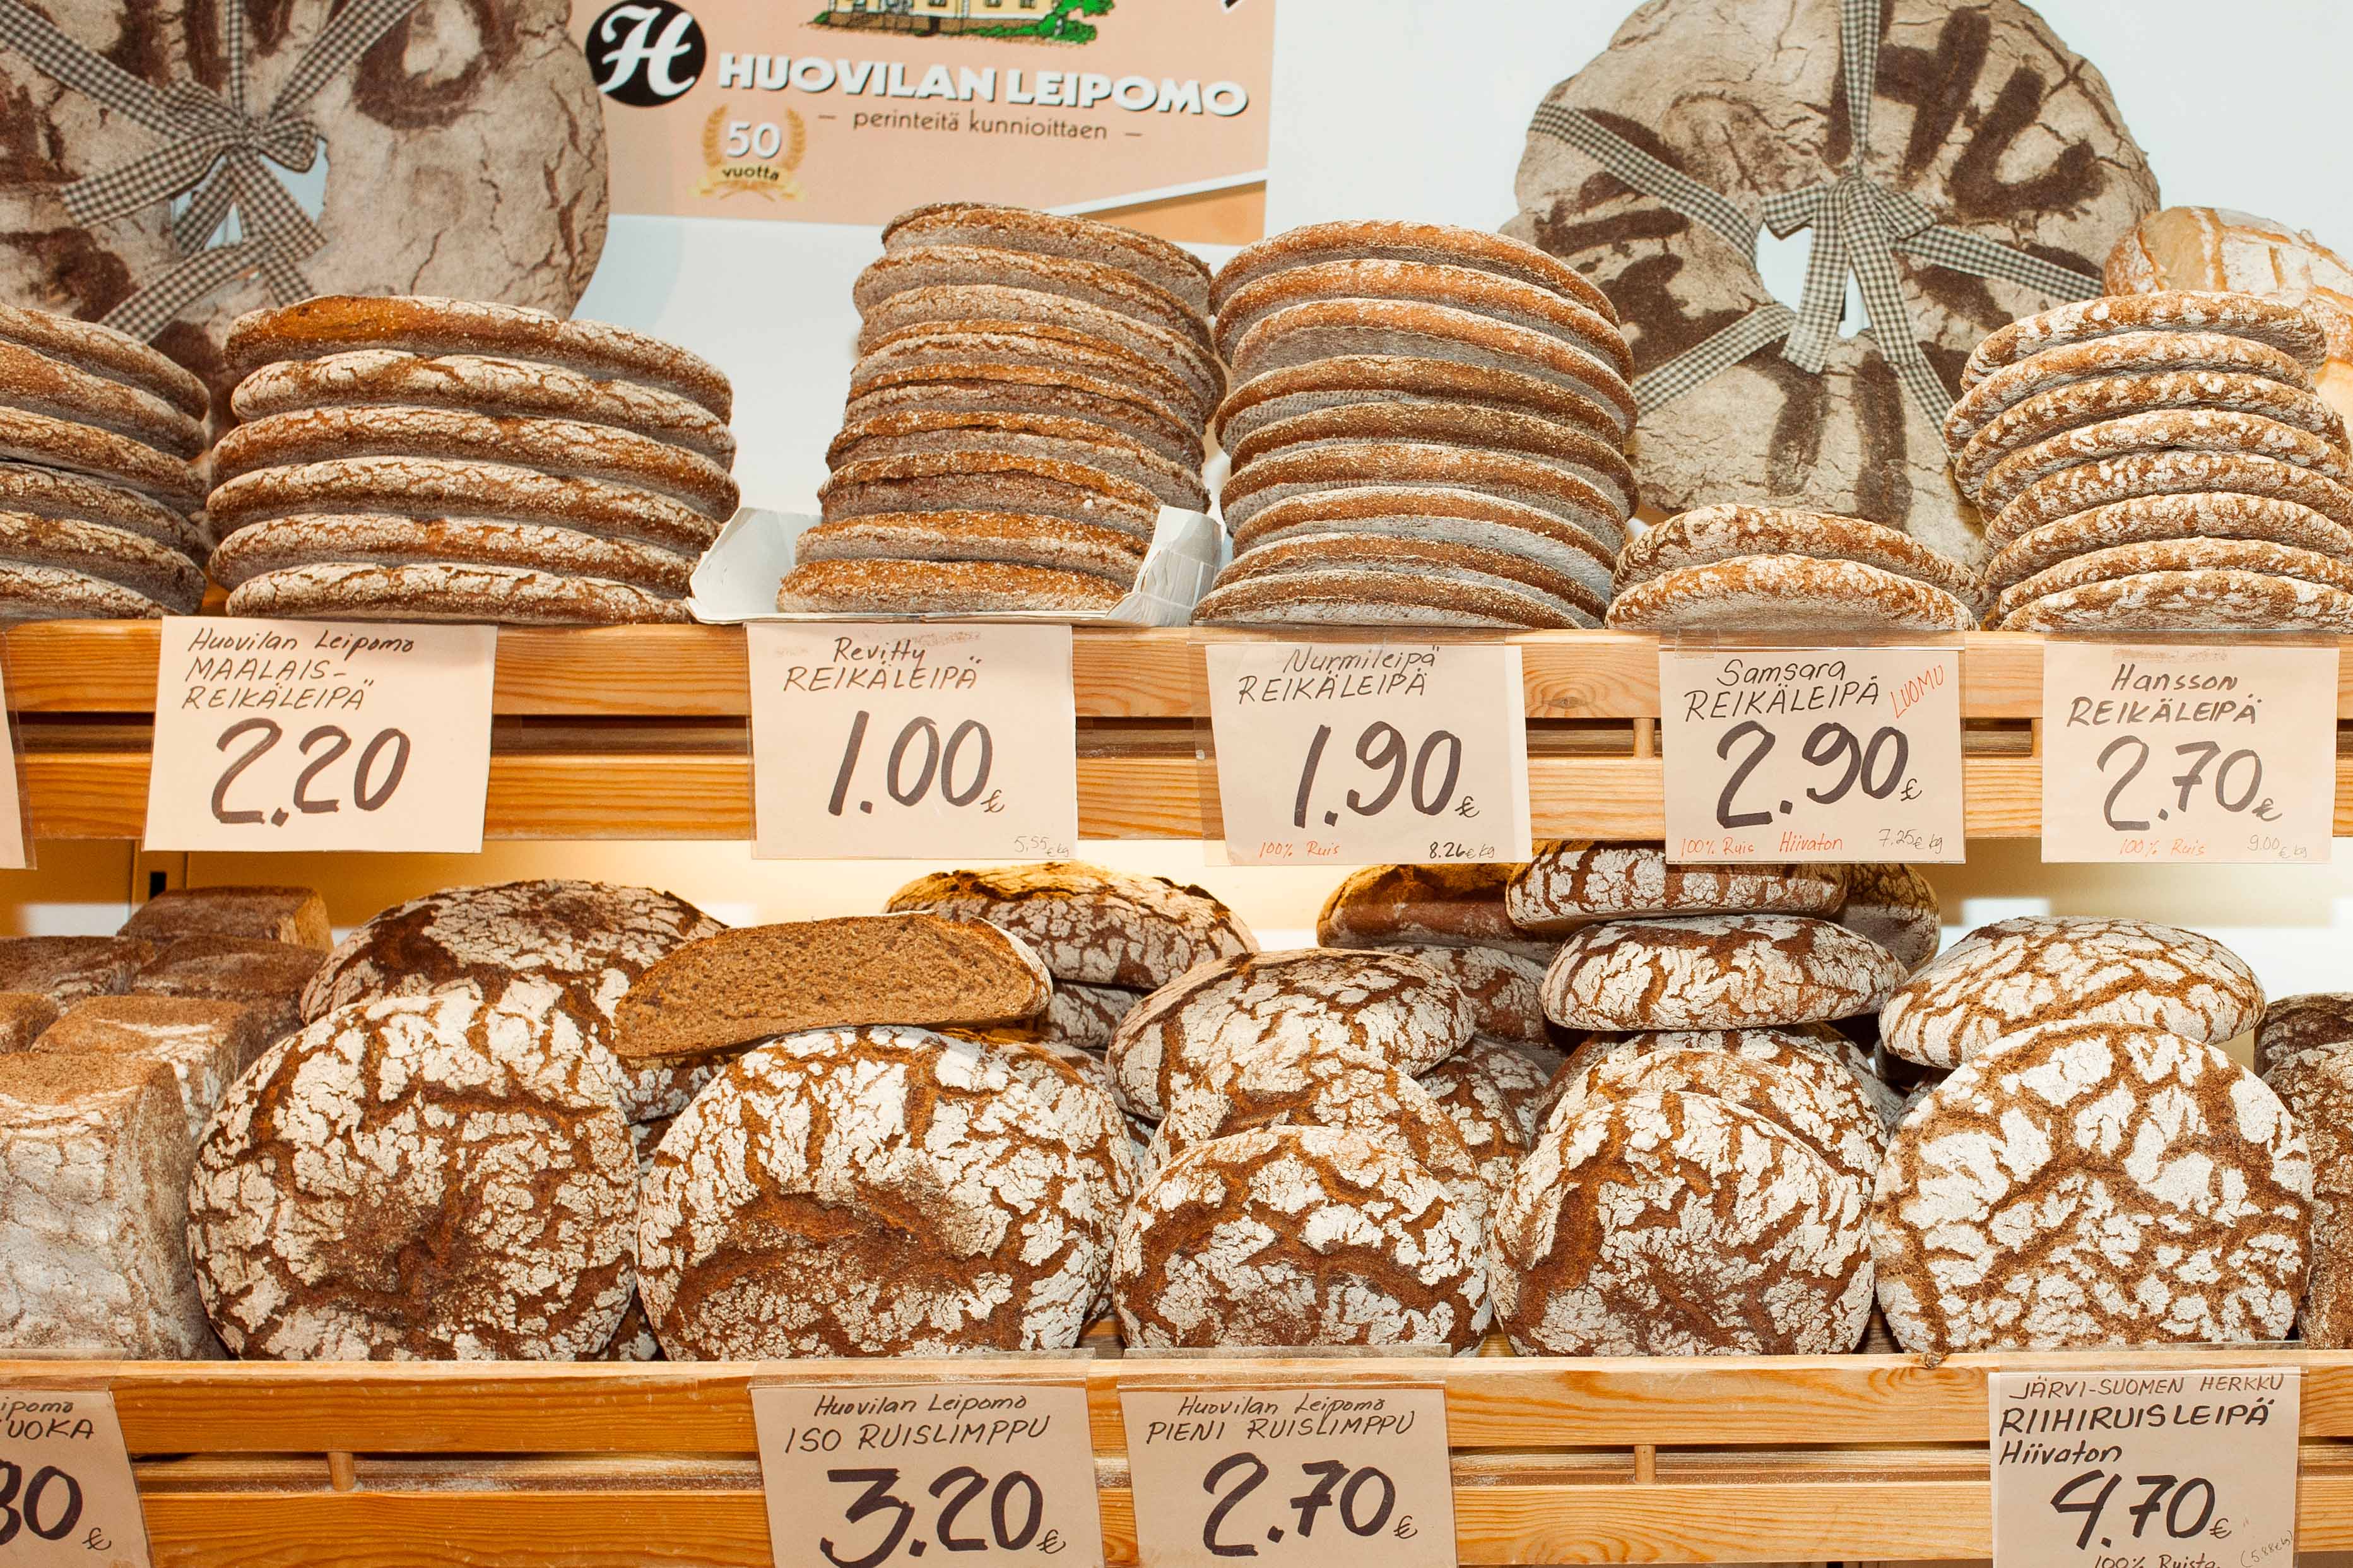 A shelf full of rye bread in market hall in Hakaniemi, Helsinki